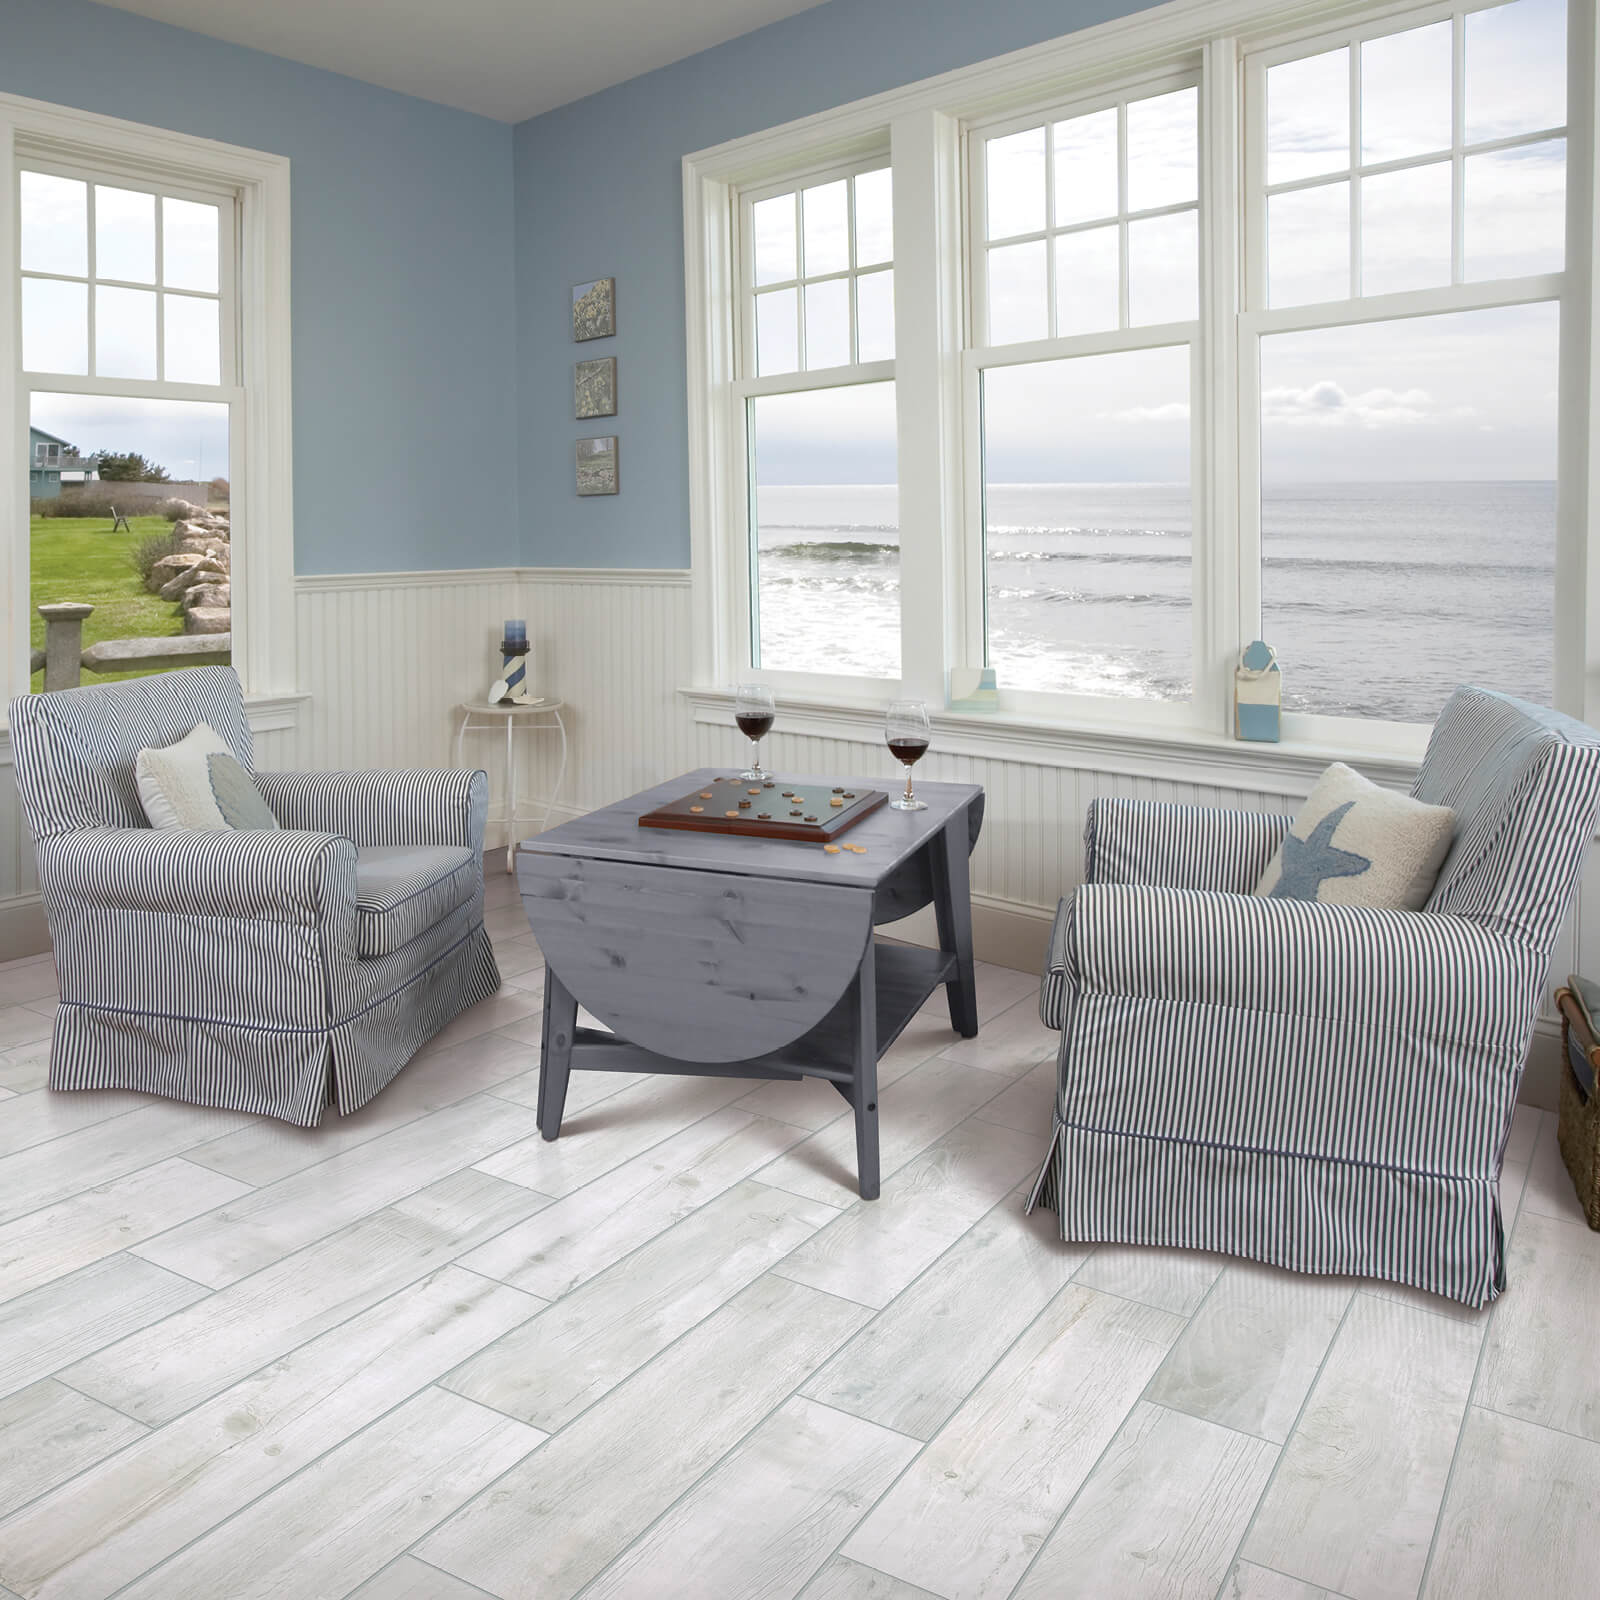 Laminate flooring in living room | Bobs Discount Carpet Inc